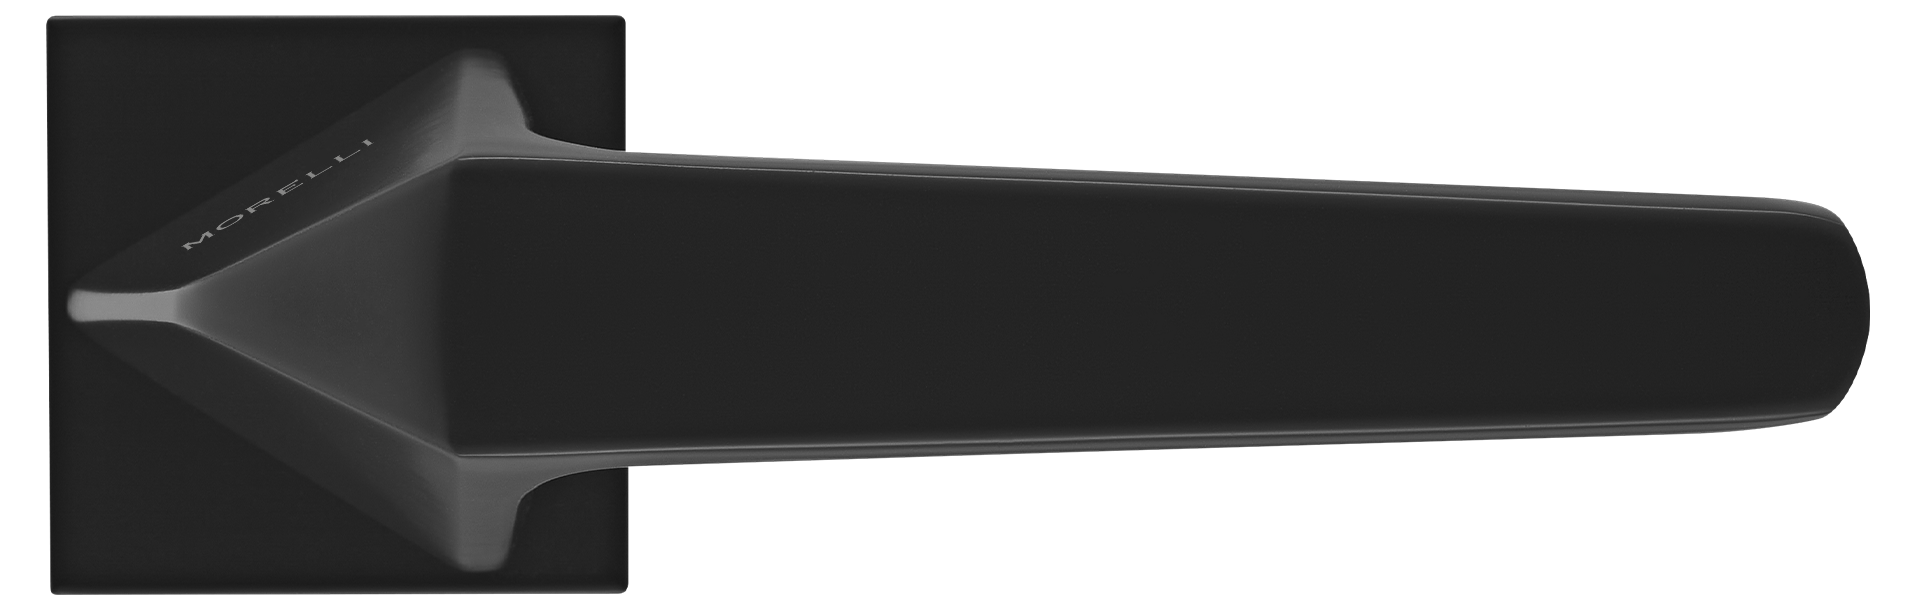 SOUK ручка дверная на квадратной розетке 6 мм, MH-55-S6 BL, цвет - черный фото купить в Сочи